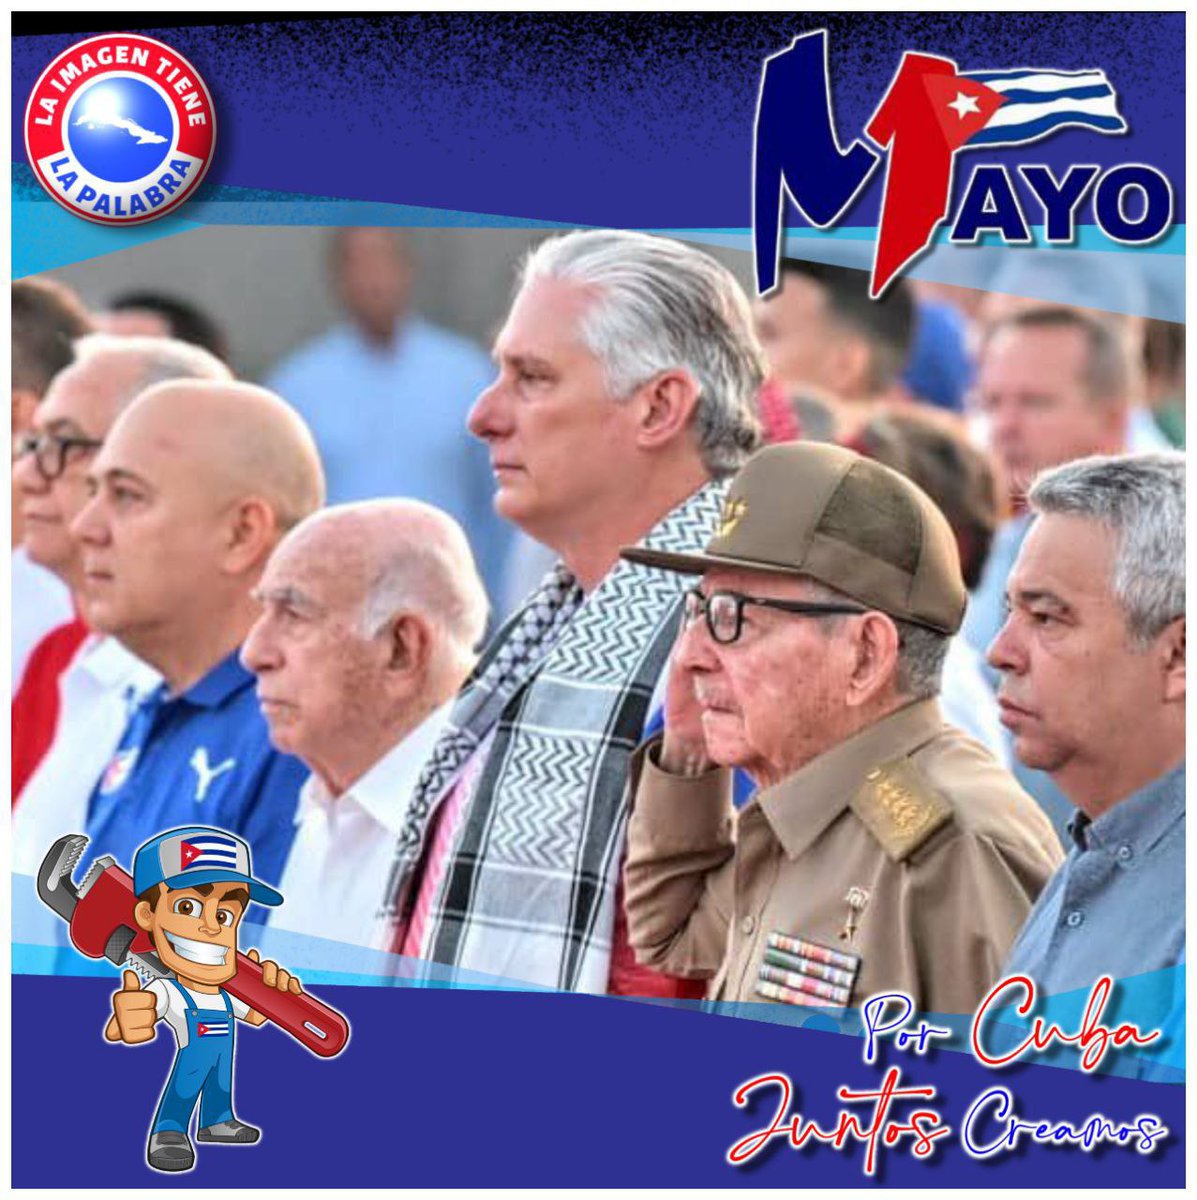 @PasionXCuba2022 @DiazCanelB @VidePvide @PartidoPCC @GobiernoCuba @UlisesGuilarte @centrofidel @FSoldadodeIdeas #PorCubaJuntosCreamos Desde la Tribuna Antimperialista el pueblo de #Cuba celebra el 1ero Mayo. #PasiónXCuba